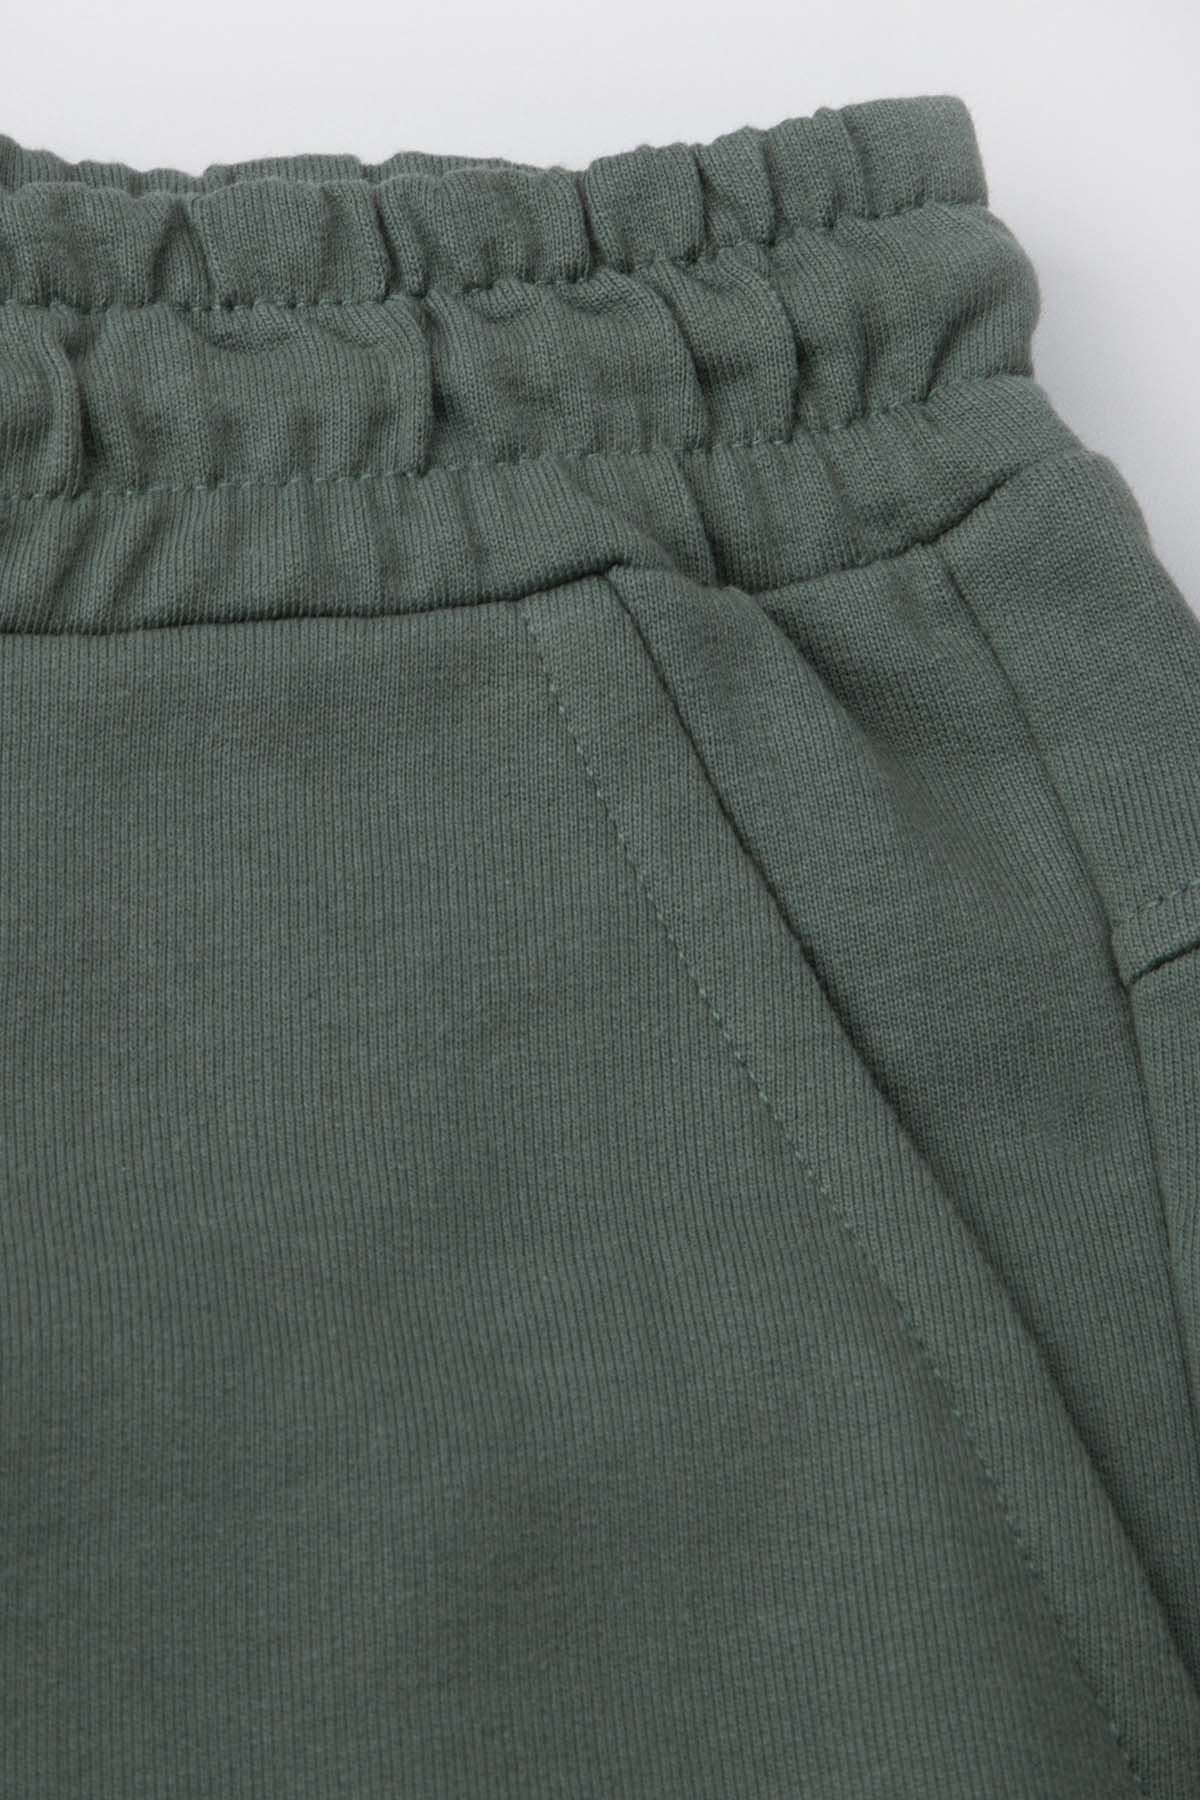 Spodnie dresowe zielone z kieszeniami i przeszyciami na nogawkach o fasonie REGULAR 2226348